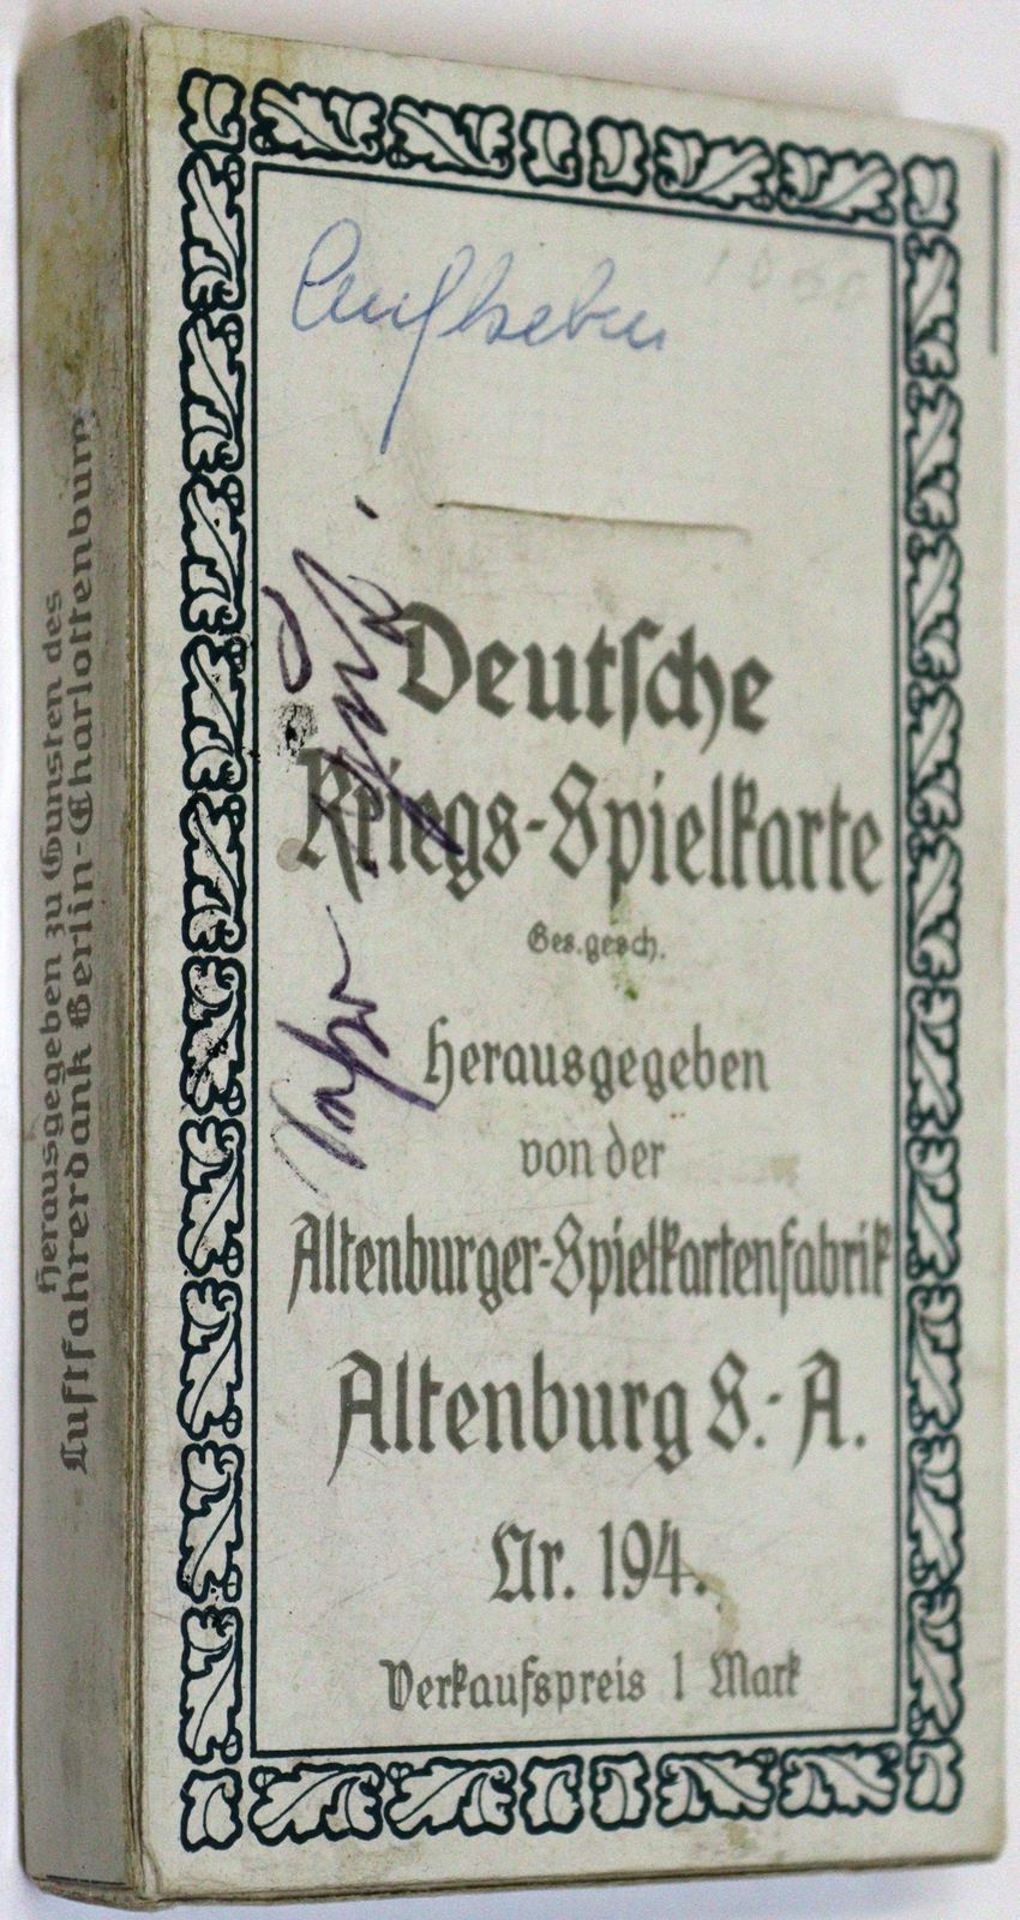 Deutsche Kriegs-Spielkarte. - Image 6 of 7